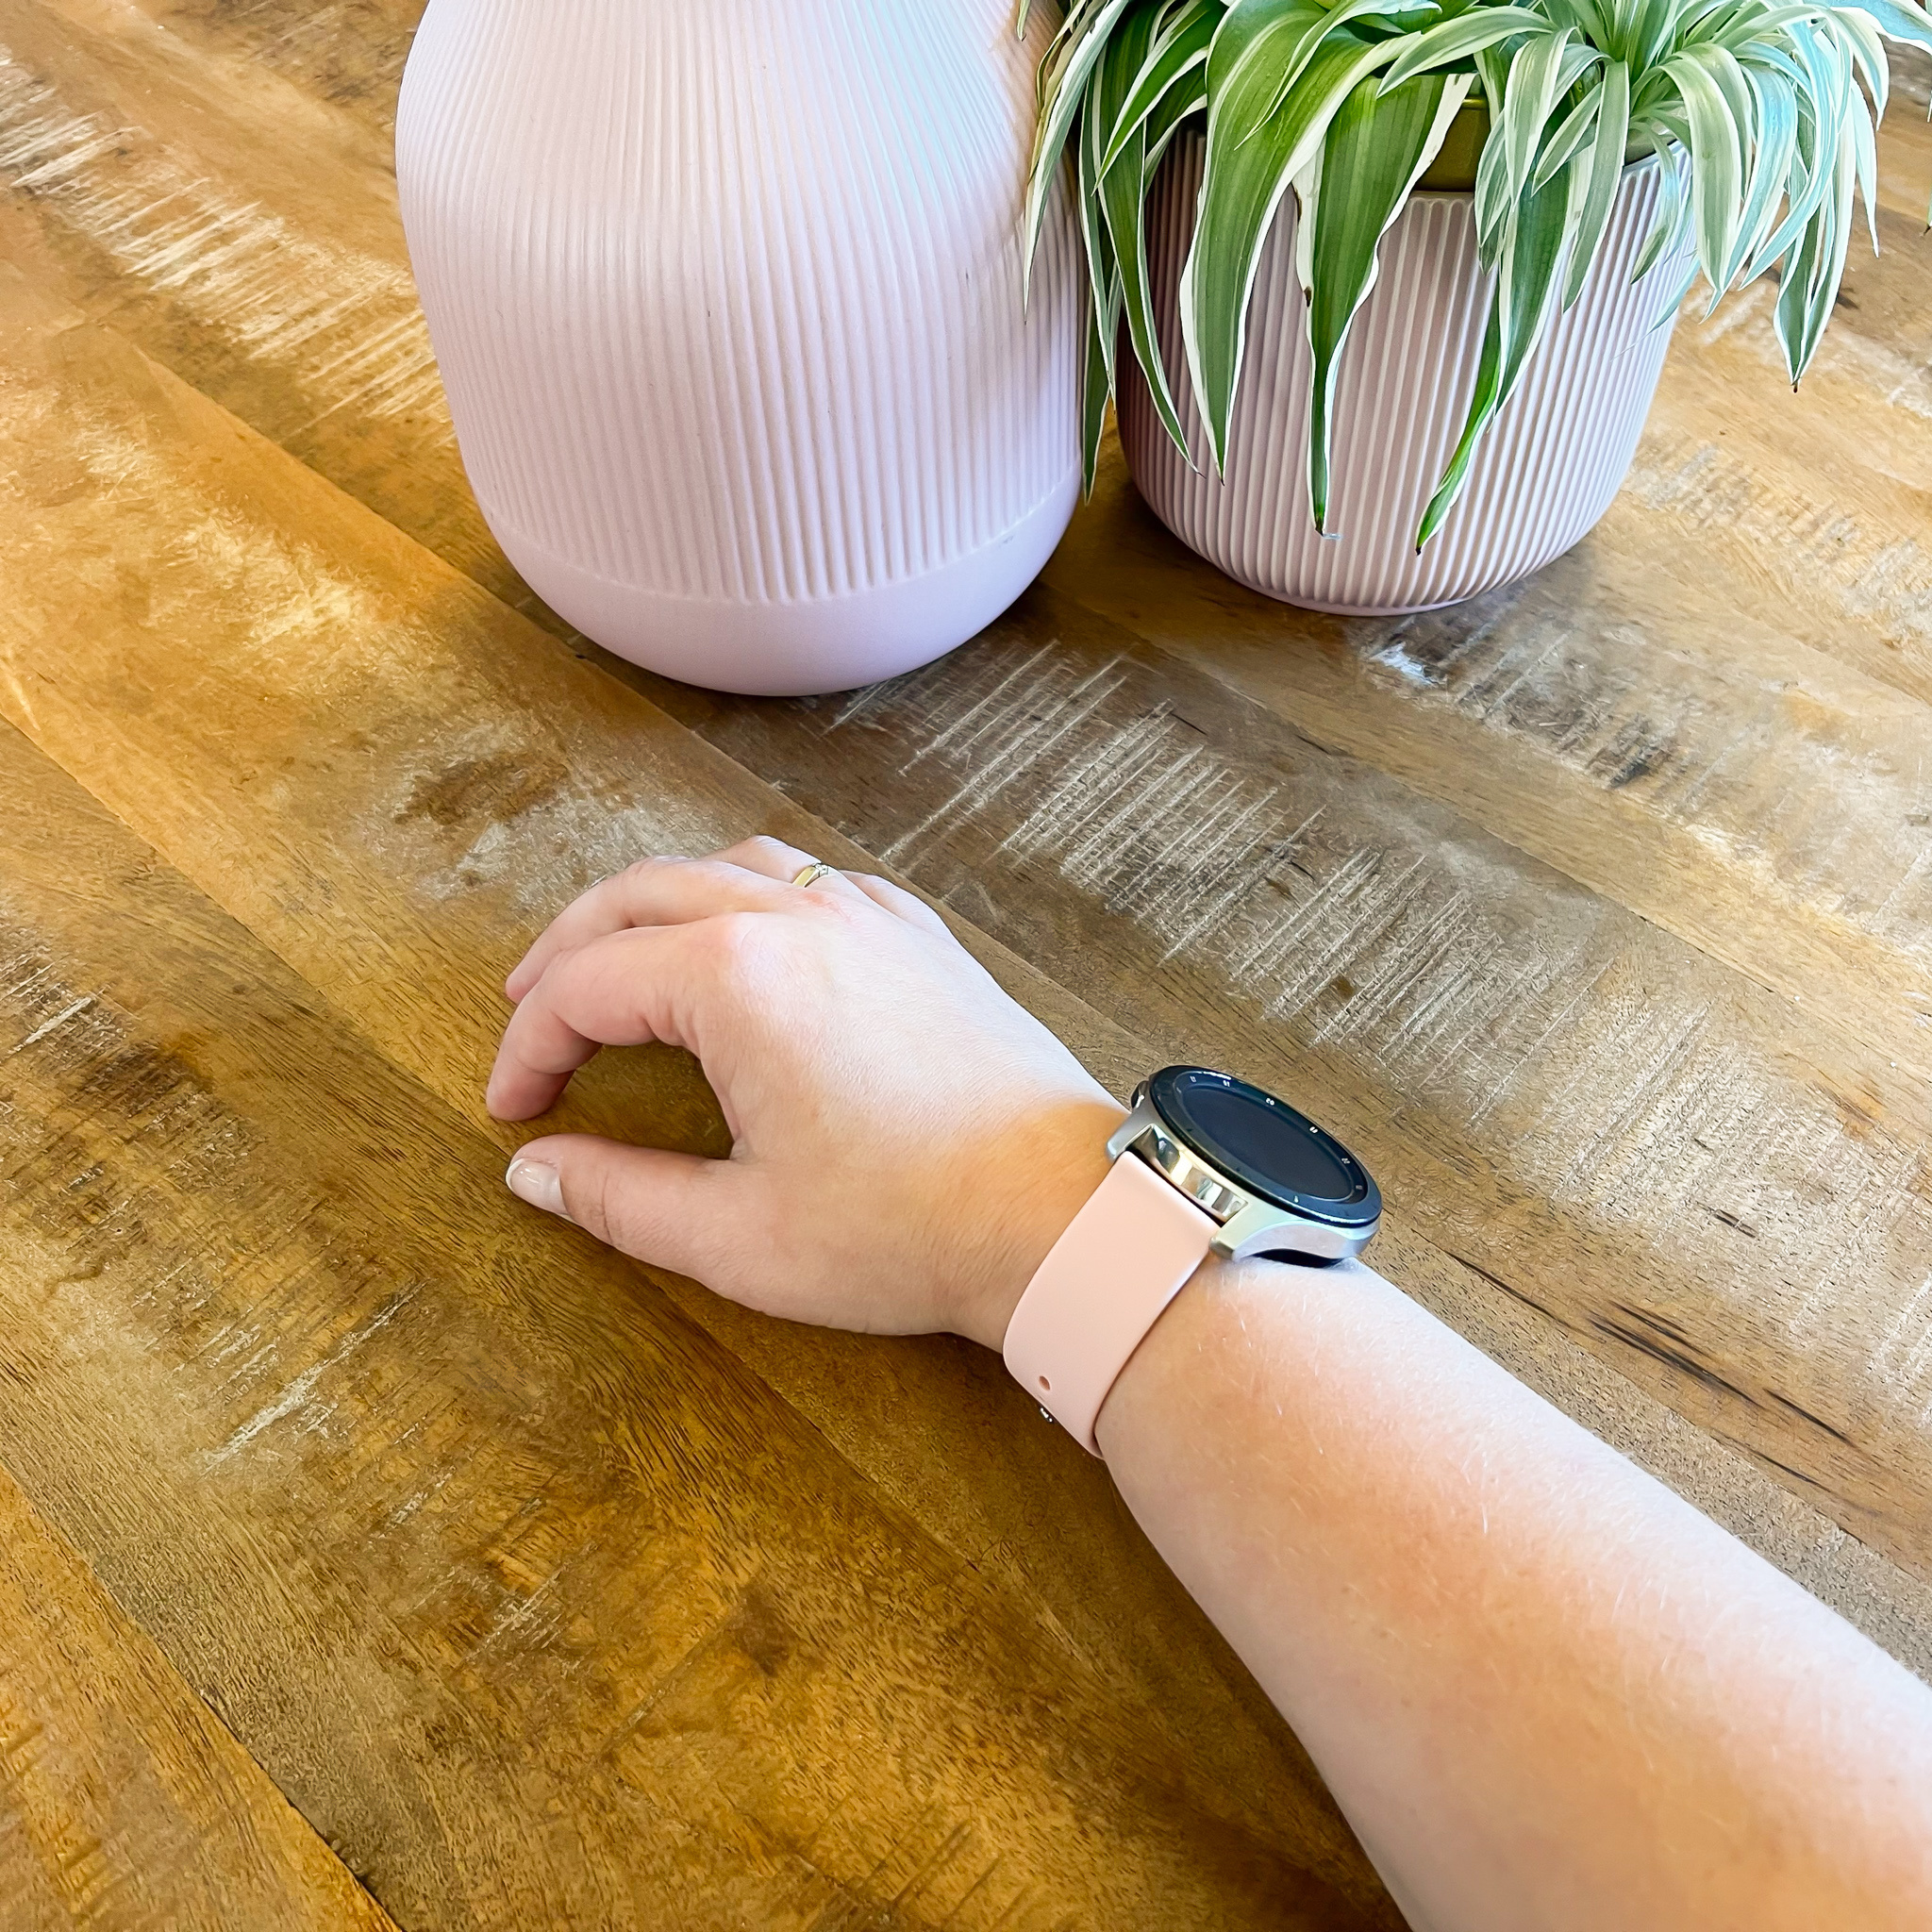 Correa deportiva de silicona para el Samsung Galaxy Watch - rosa